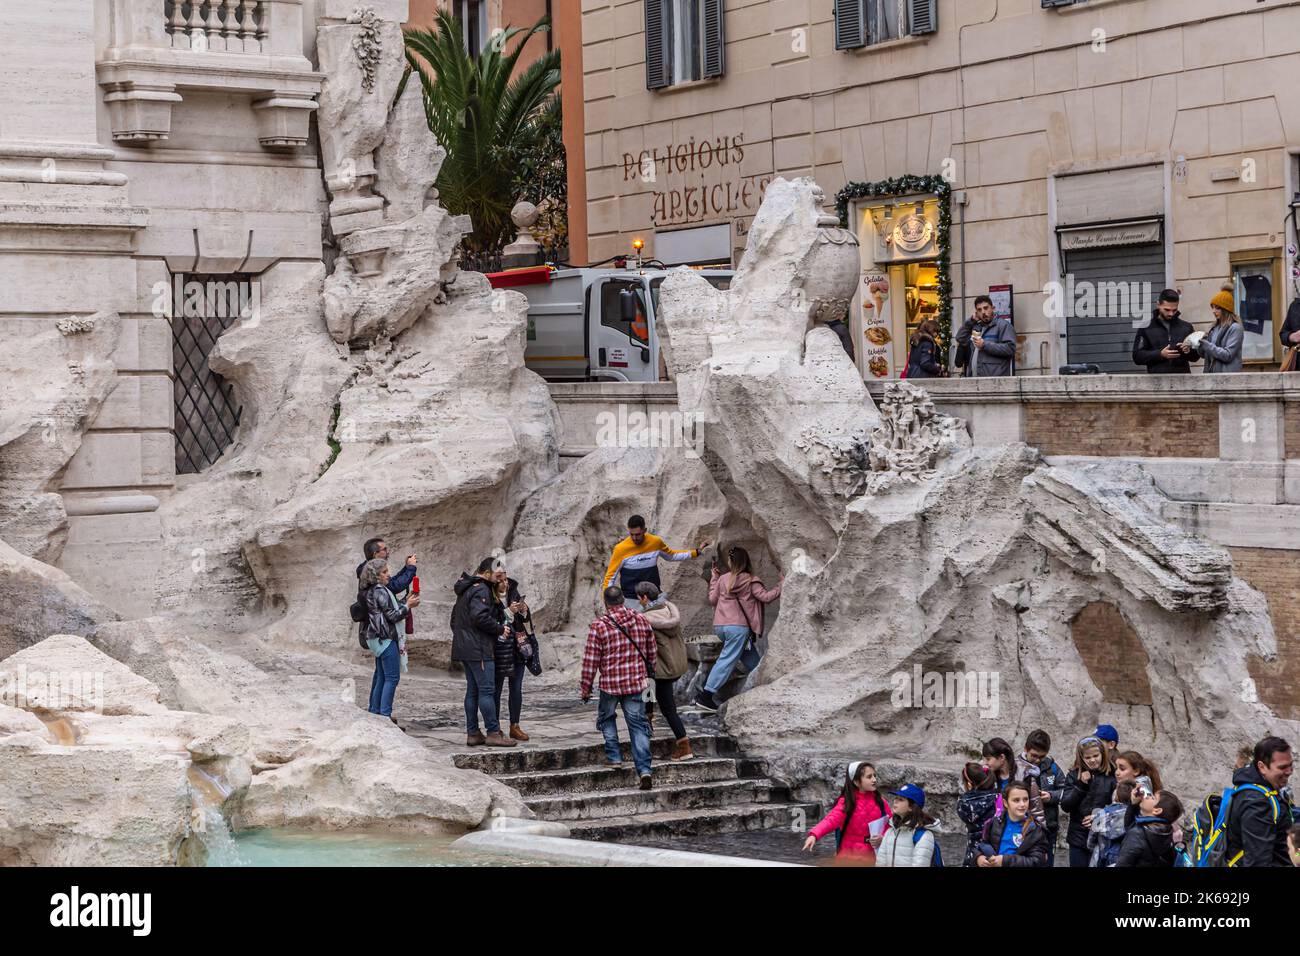 ROME, ITALIE - 02 DÉCEMBRE 2019 : touristes visitant la fontaine de Trevi (Fontana di Trevi) à Rome, Italie Banque D'Images